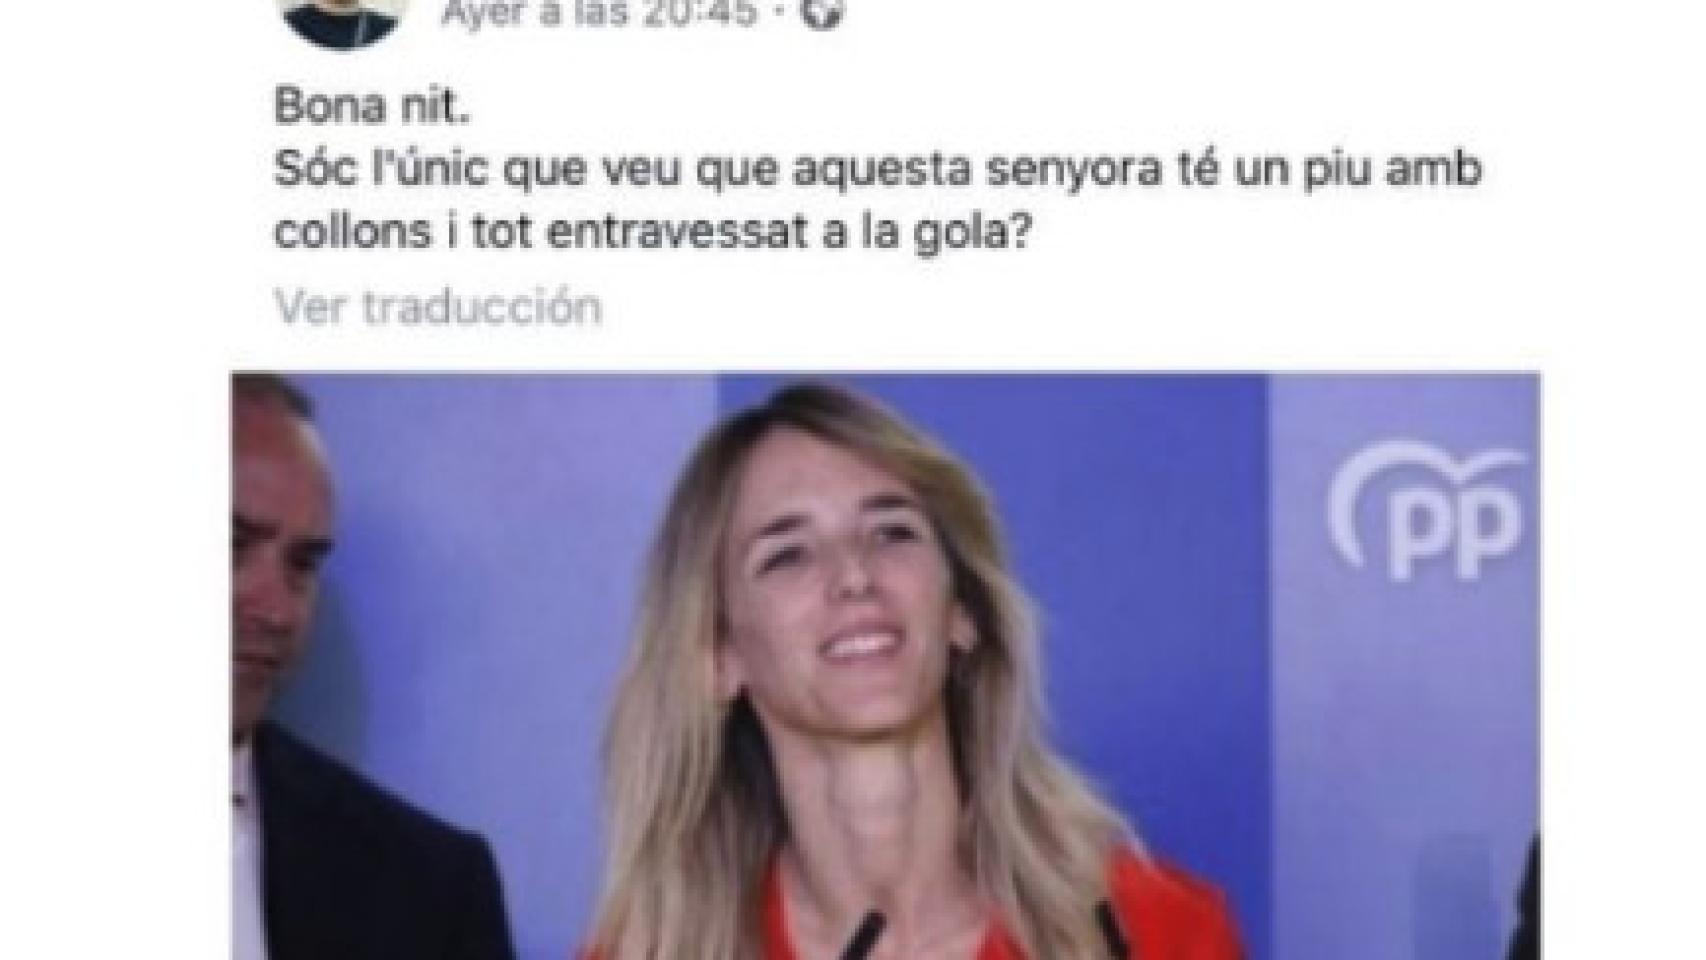 Mensaje en redes compartido por el concejal del PSOE contra Cayetana Álvarez de Toledo.